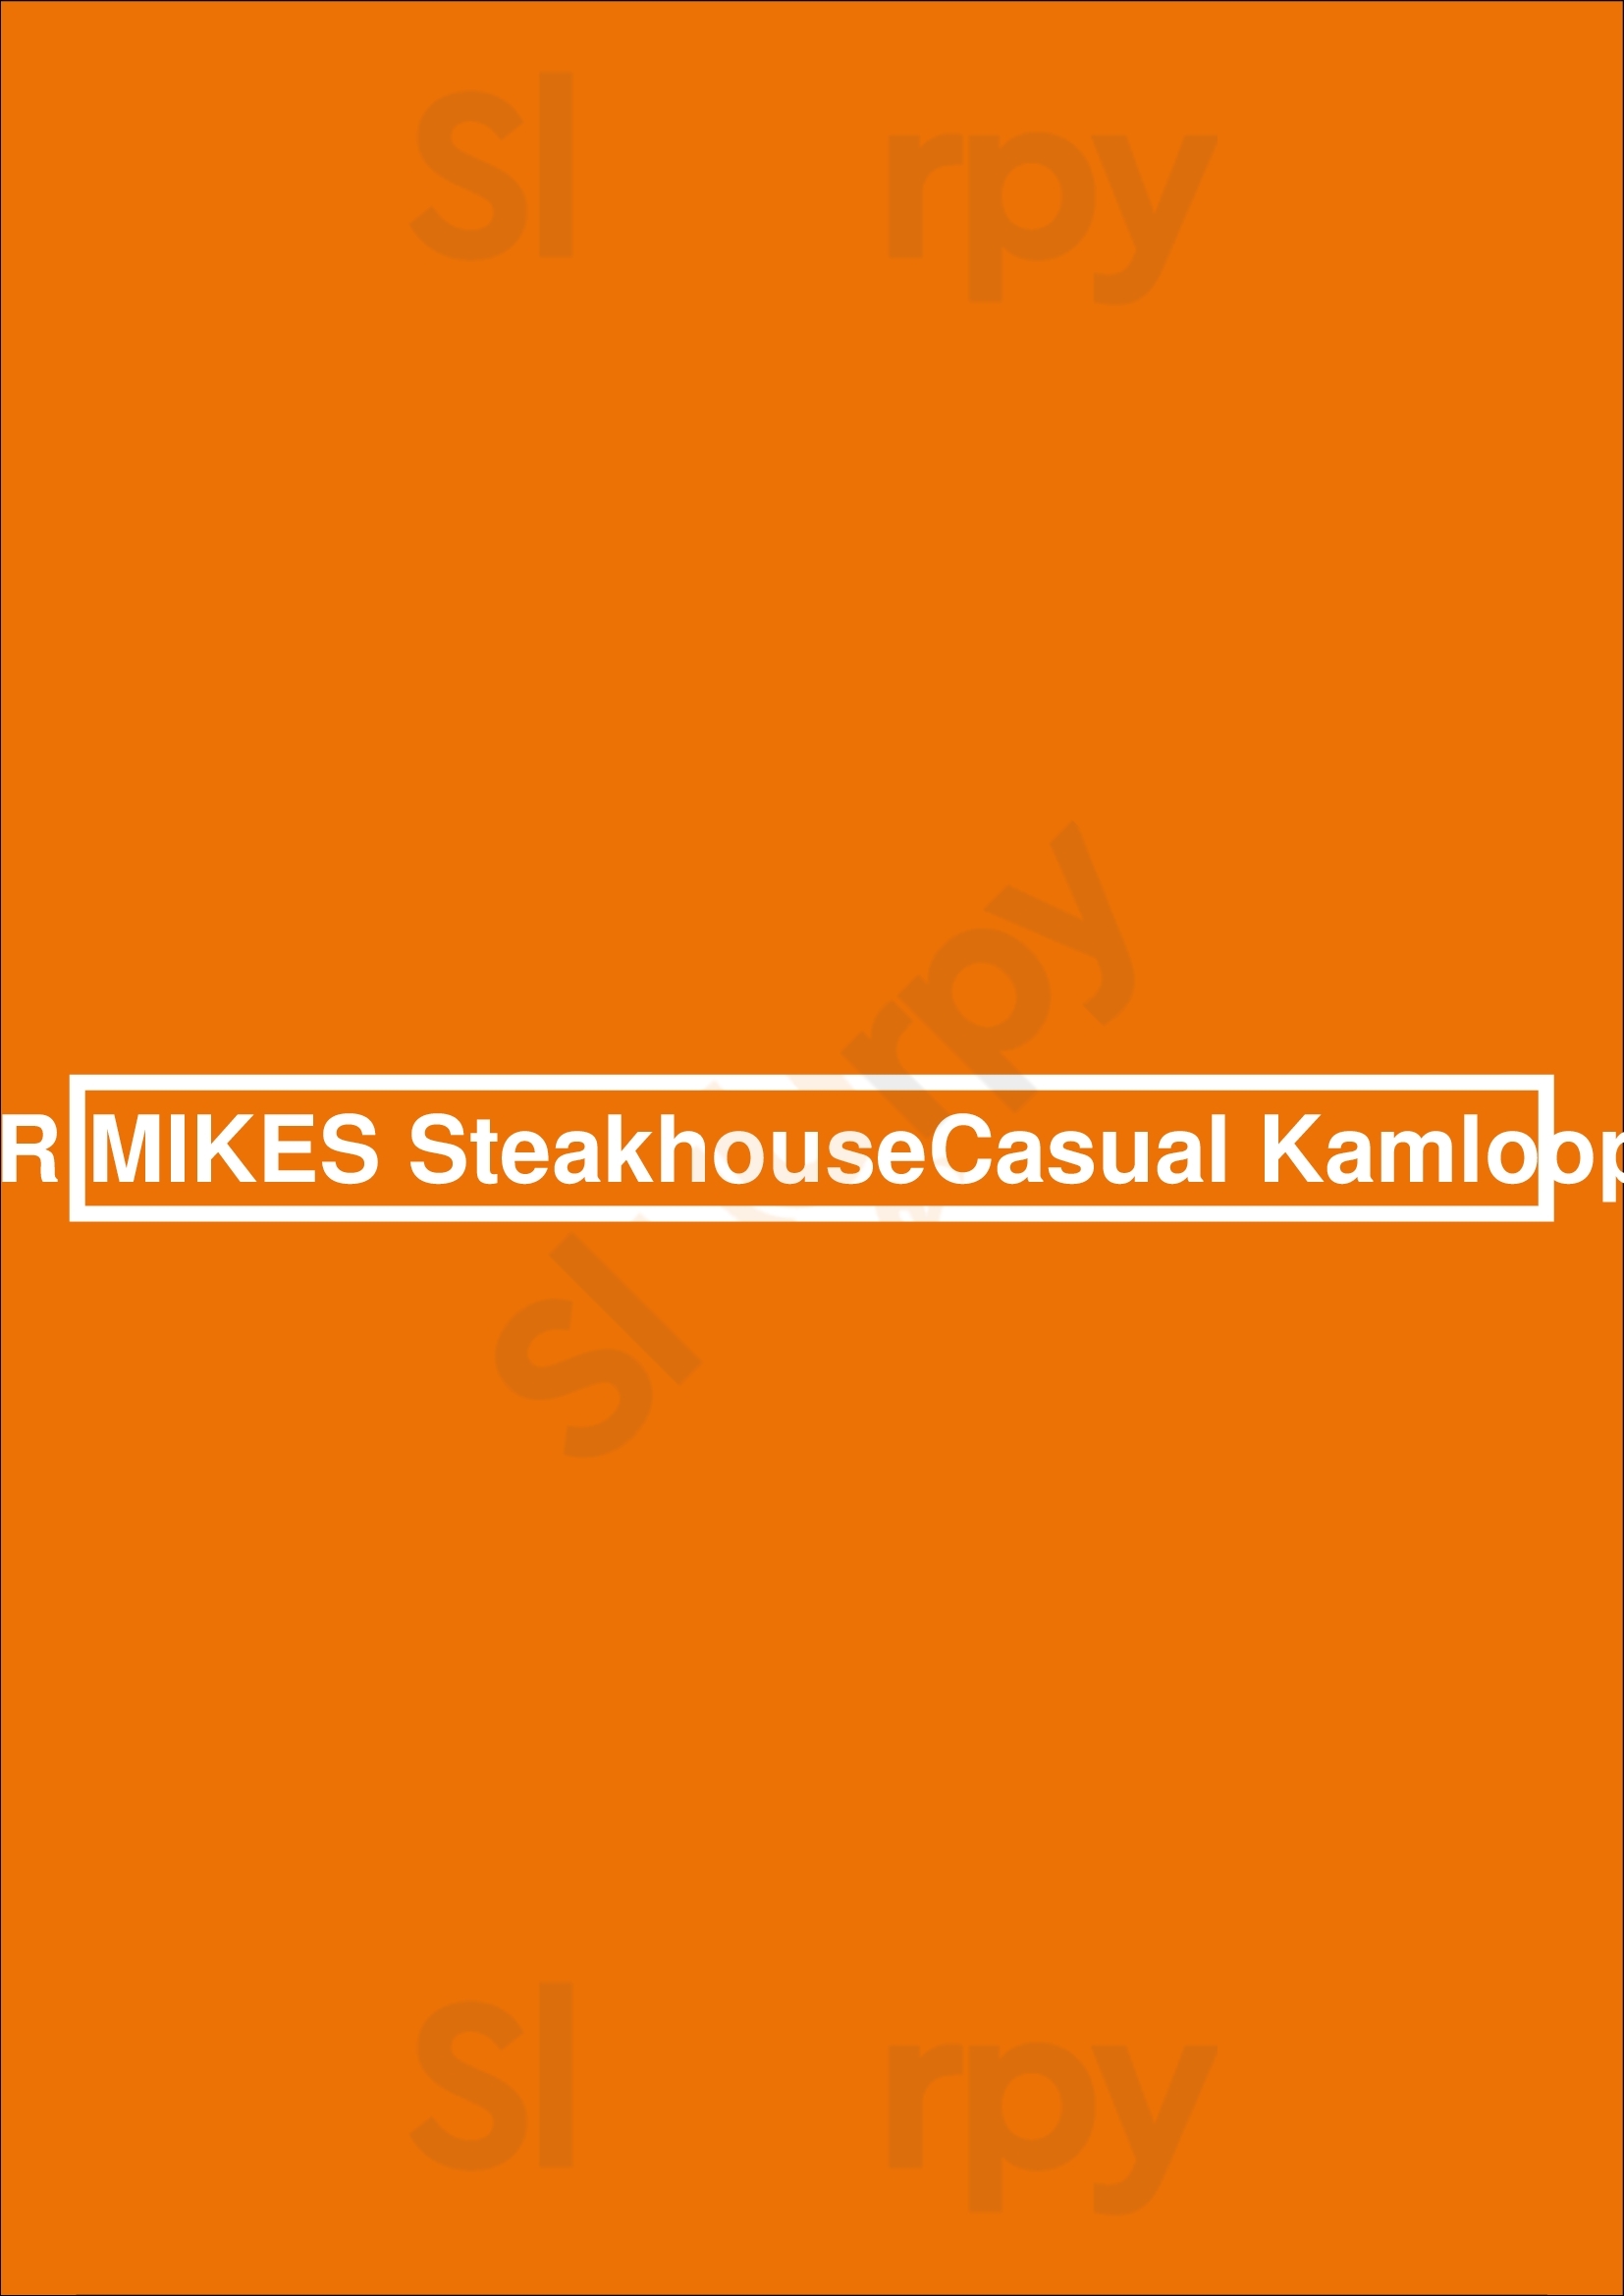 Mr Mikes Steakhousecasual Kamloops Kamloops Menu - 1